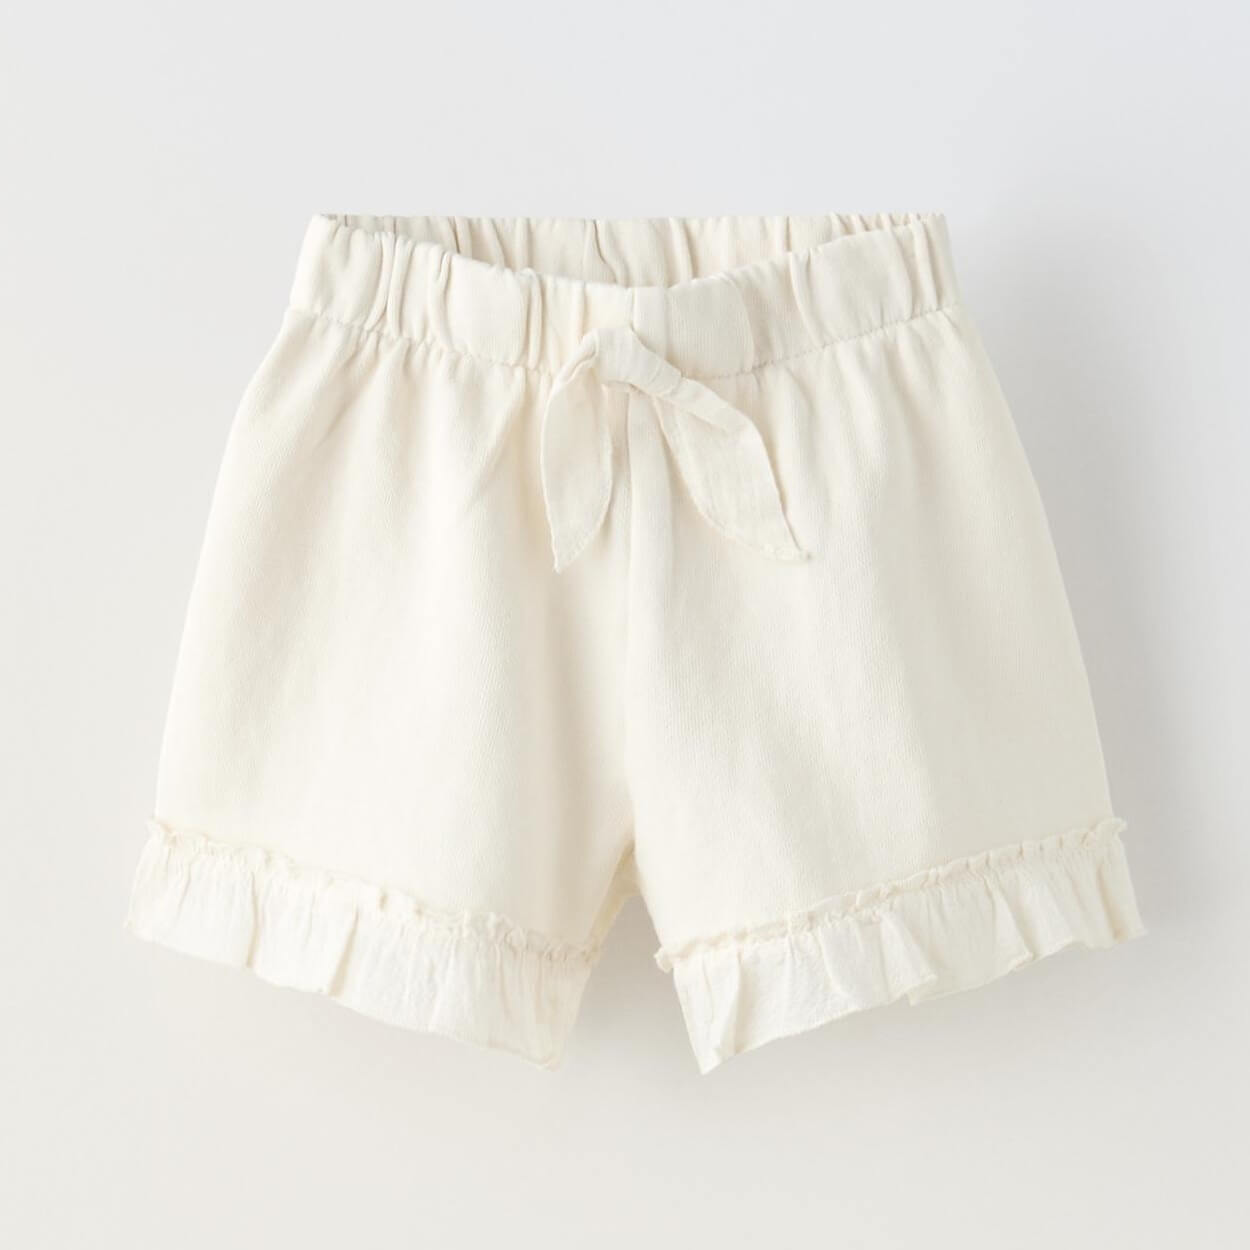 Шорты Zara Plush Bermuda With Bow And Ruffles, белый шорты с аппликациями на 9 12 месяцев